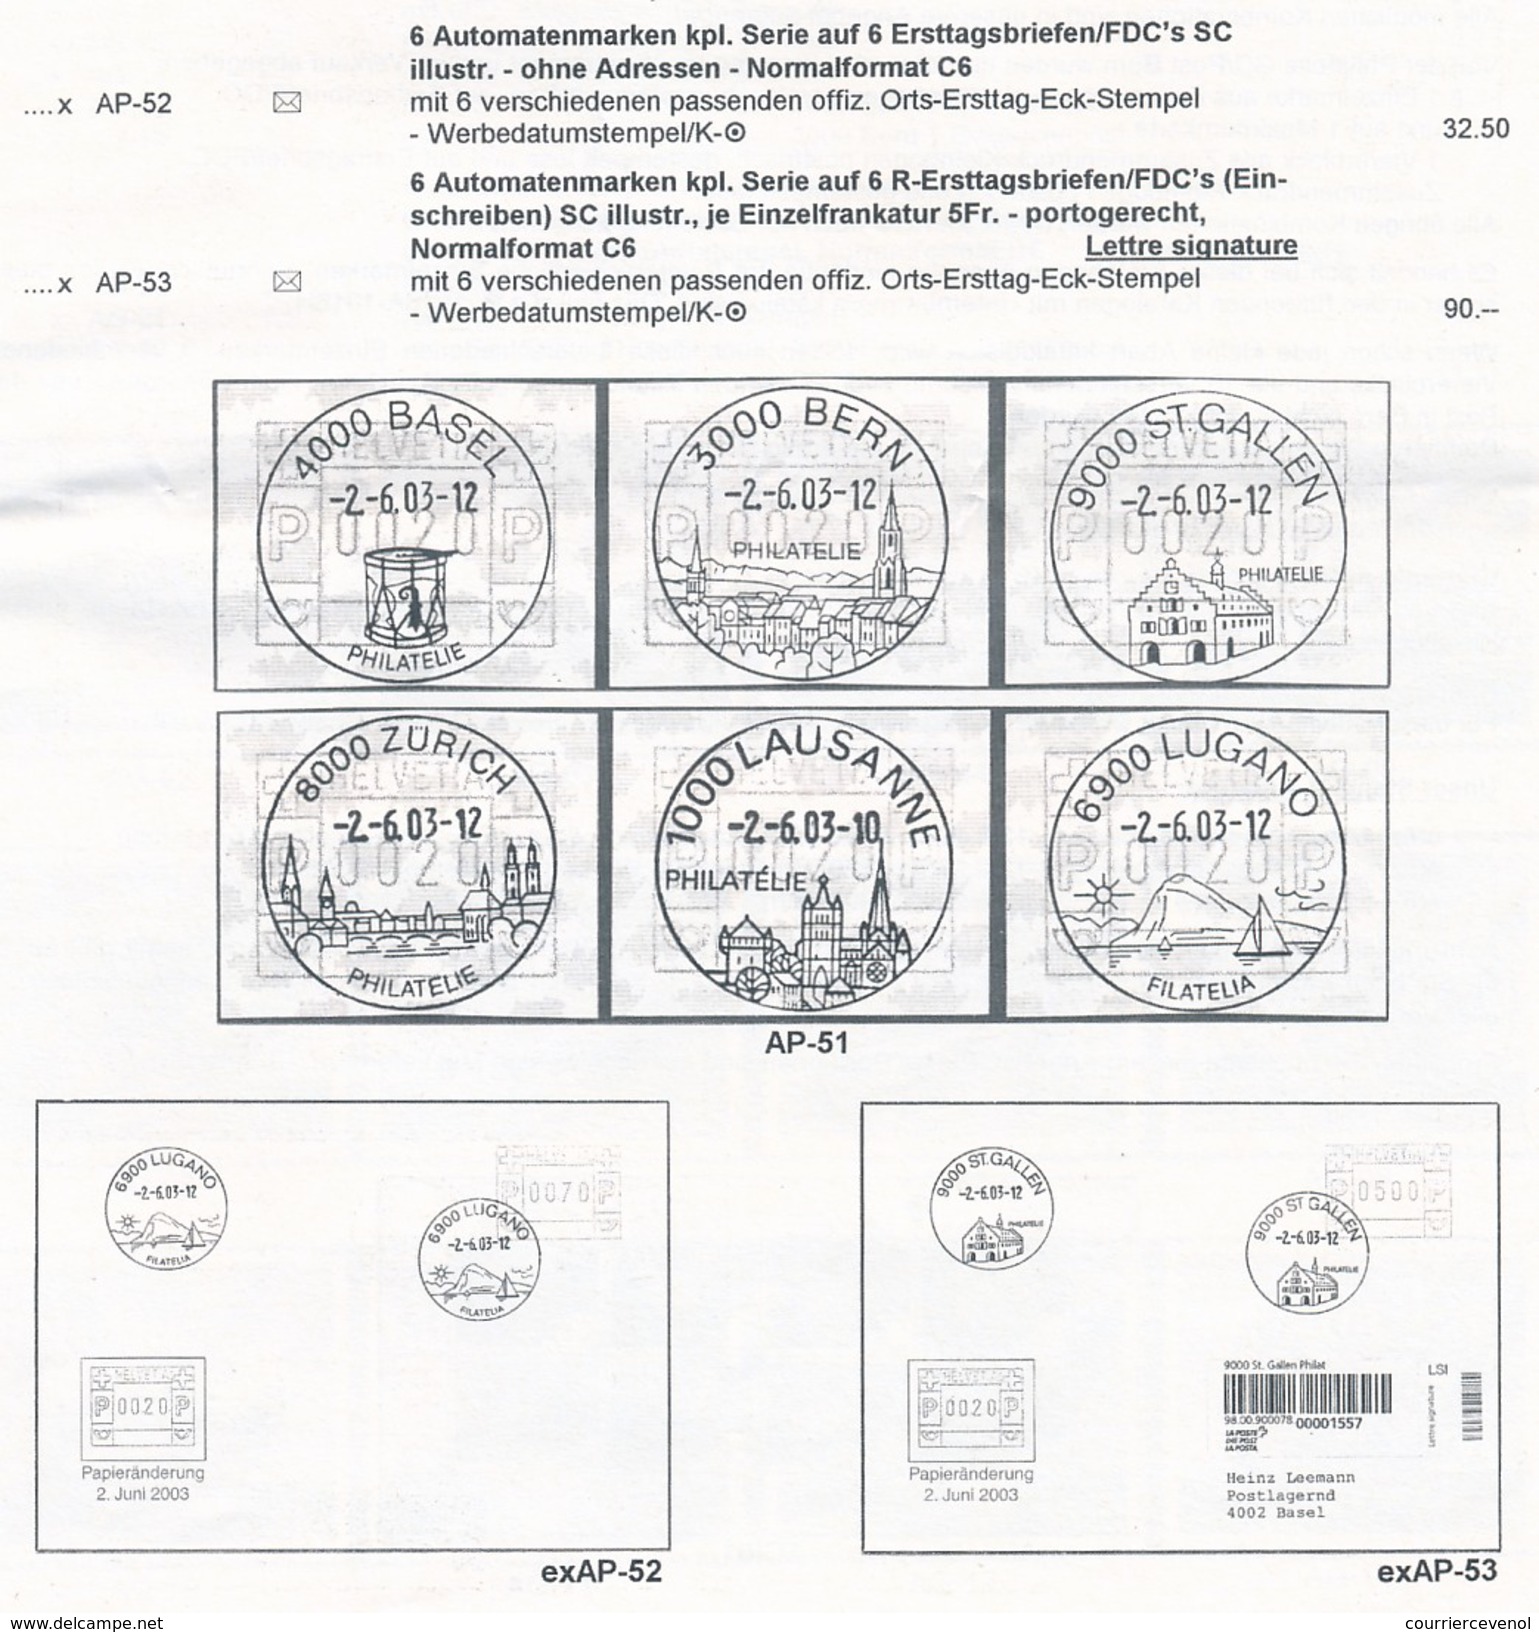 SUISSE -  FDC 2003 - Série "Automatenmarken" - 6 enveloppes